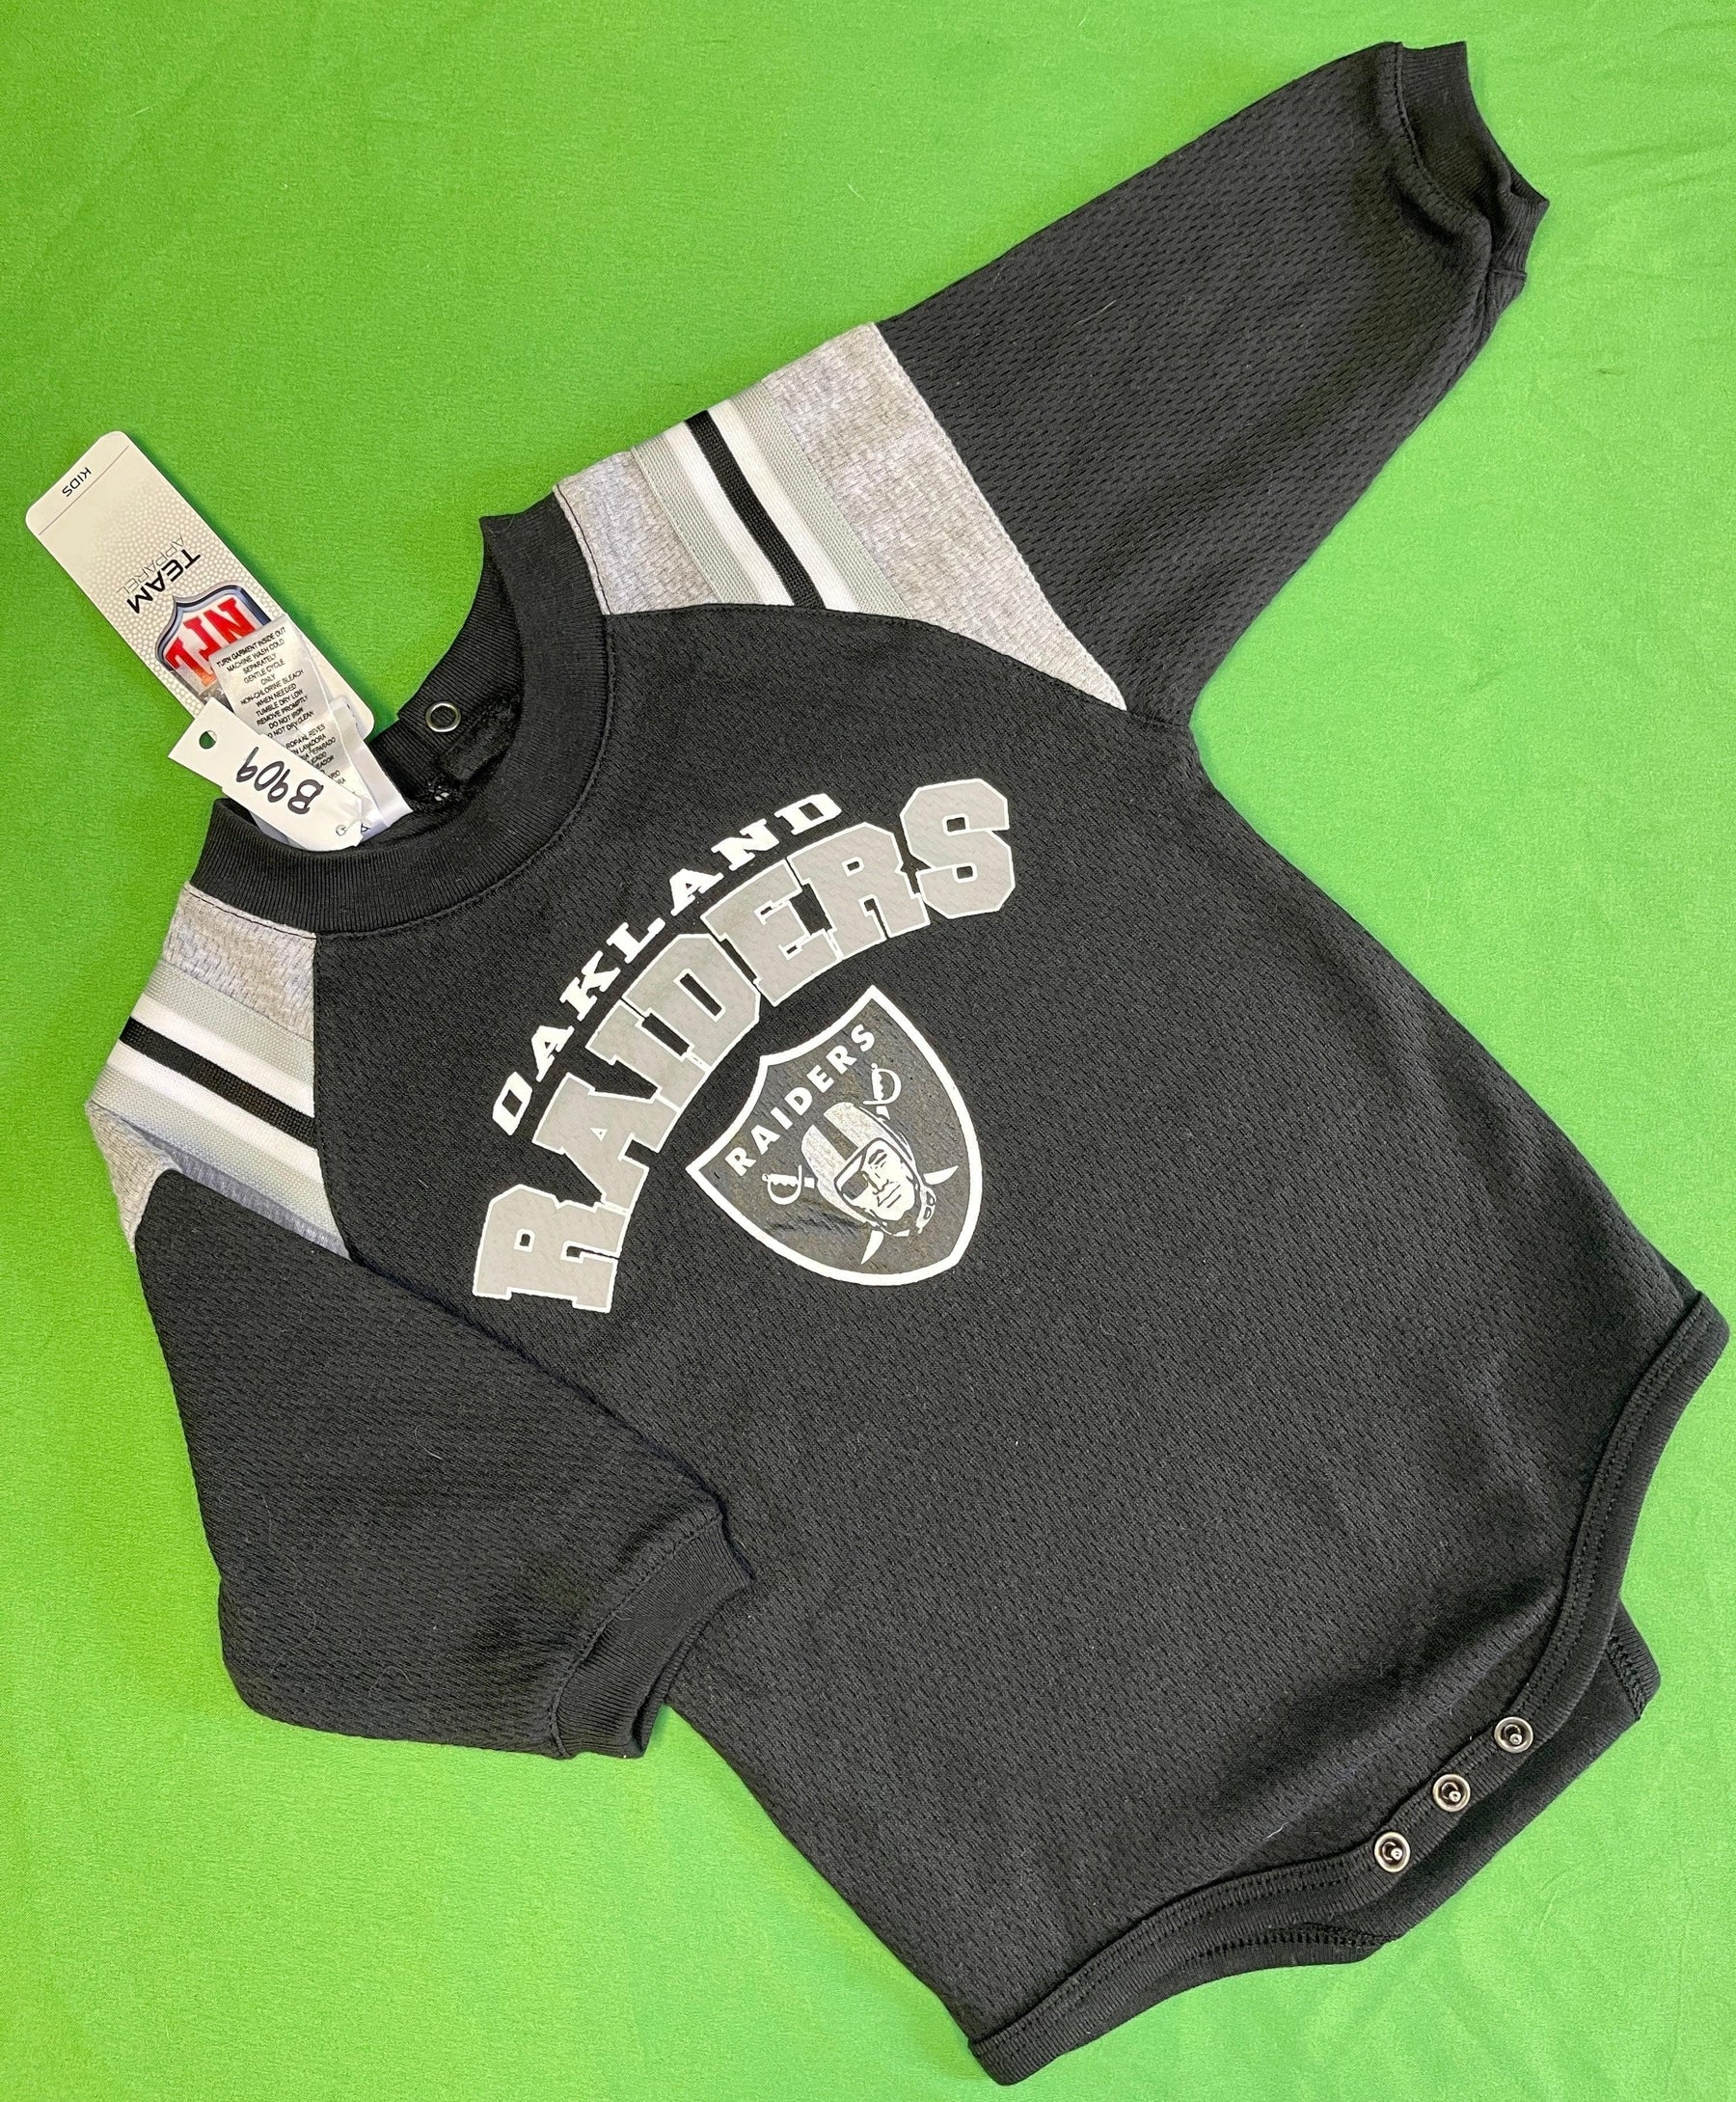 NFL Las Vegas (Oakland) Raiders L/S Bodysuit/Vest 12 months NWT